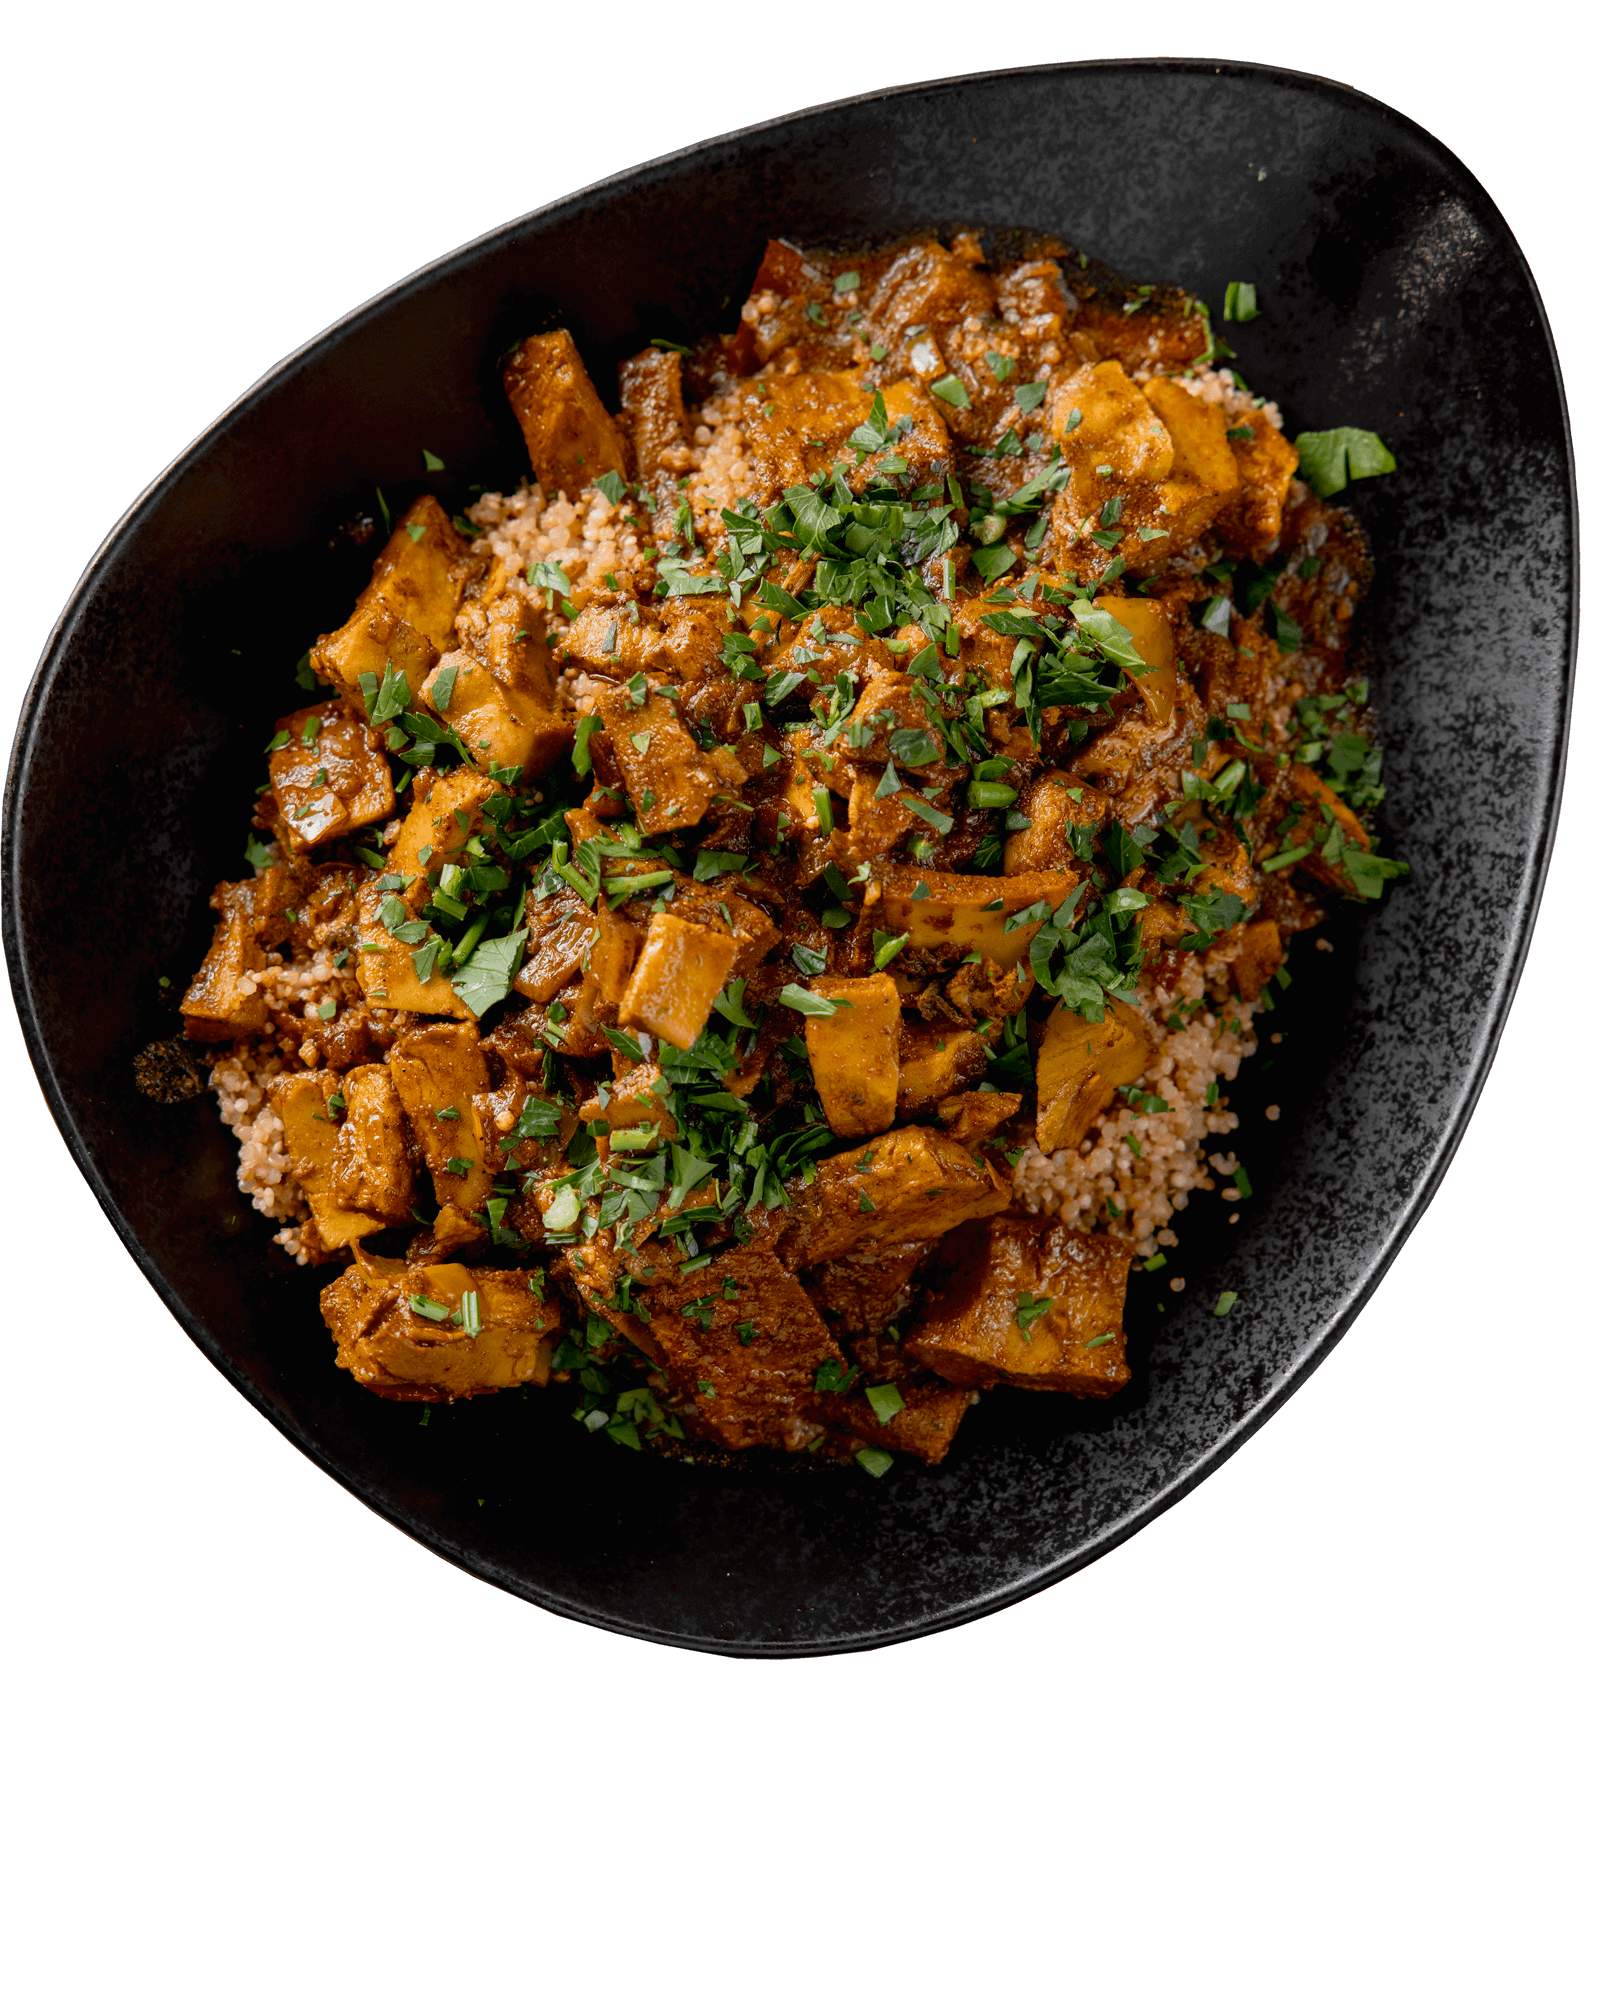 Verwöhnen Sie Ihren Gaumen mit dem exquisiten Geschmack von Chicken Tikka Masala – saftiges Hühnerfleisch in einer würzigen indischen Sauce, perfekt vereint für ein unvergessliches kulinarisches Erlebnis.